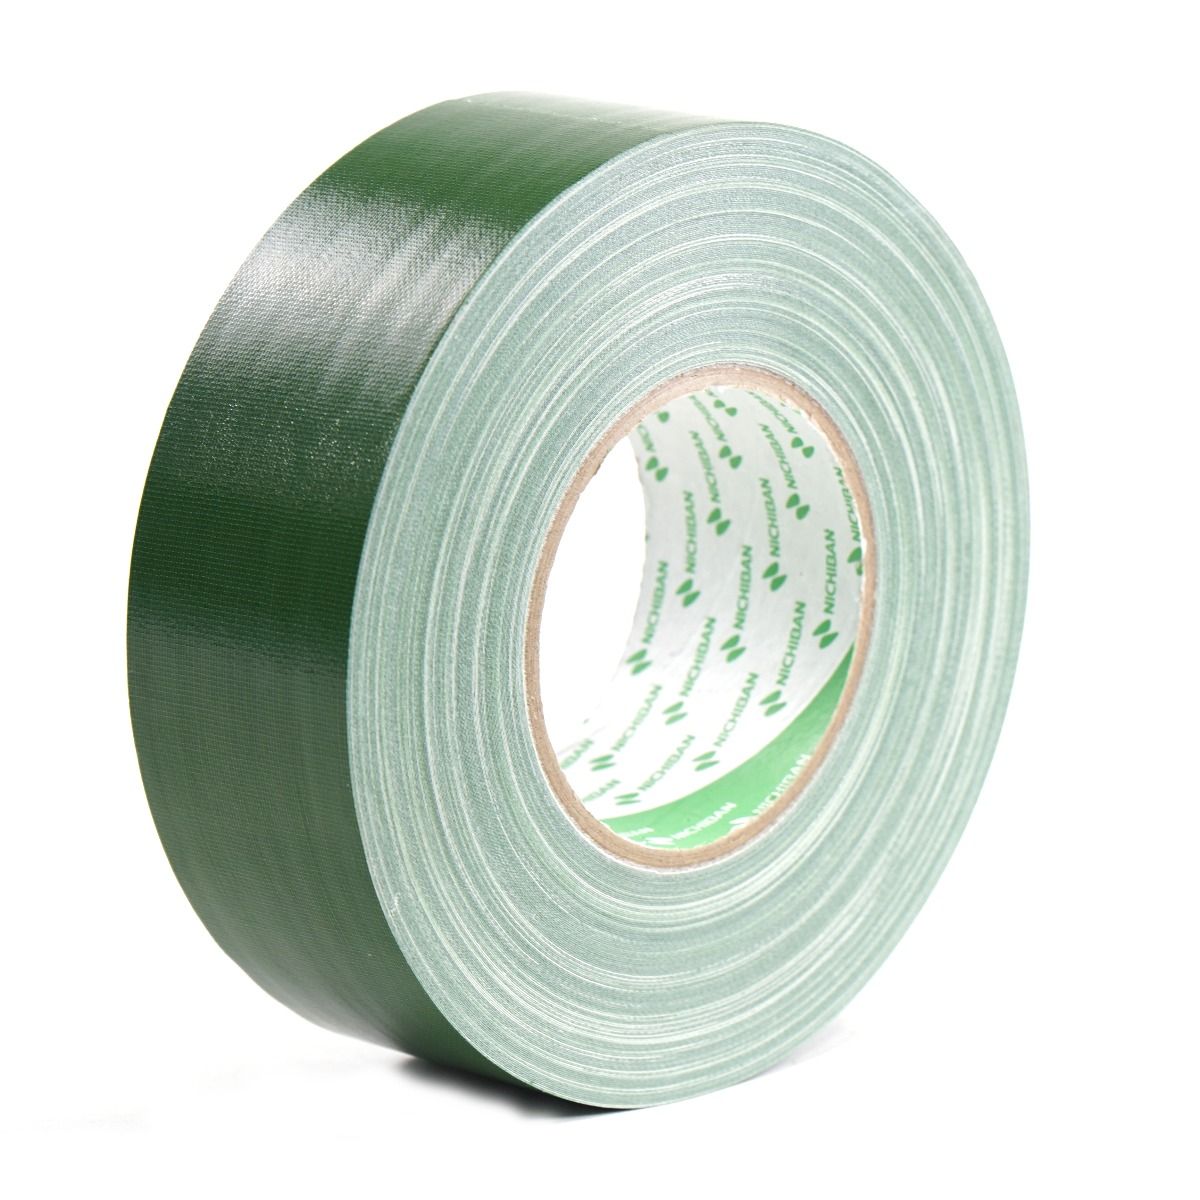 Schipbreuk Gezag maagpijn nichiban-nt1200-gaffer-tape-green-50mtr-50mm | Fairlight